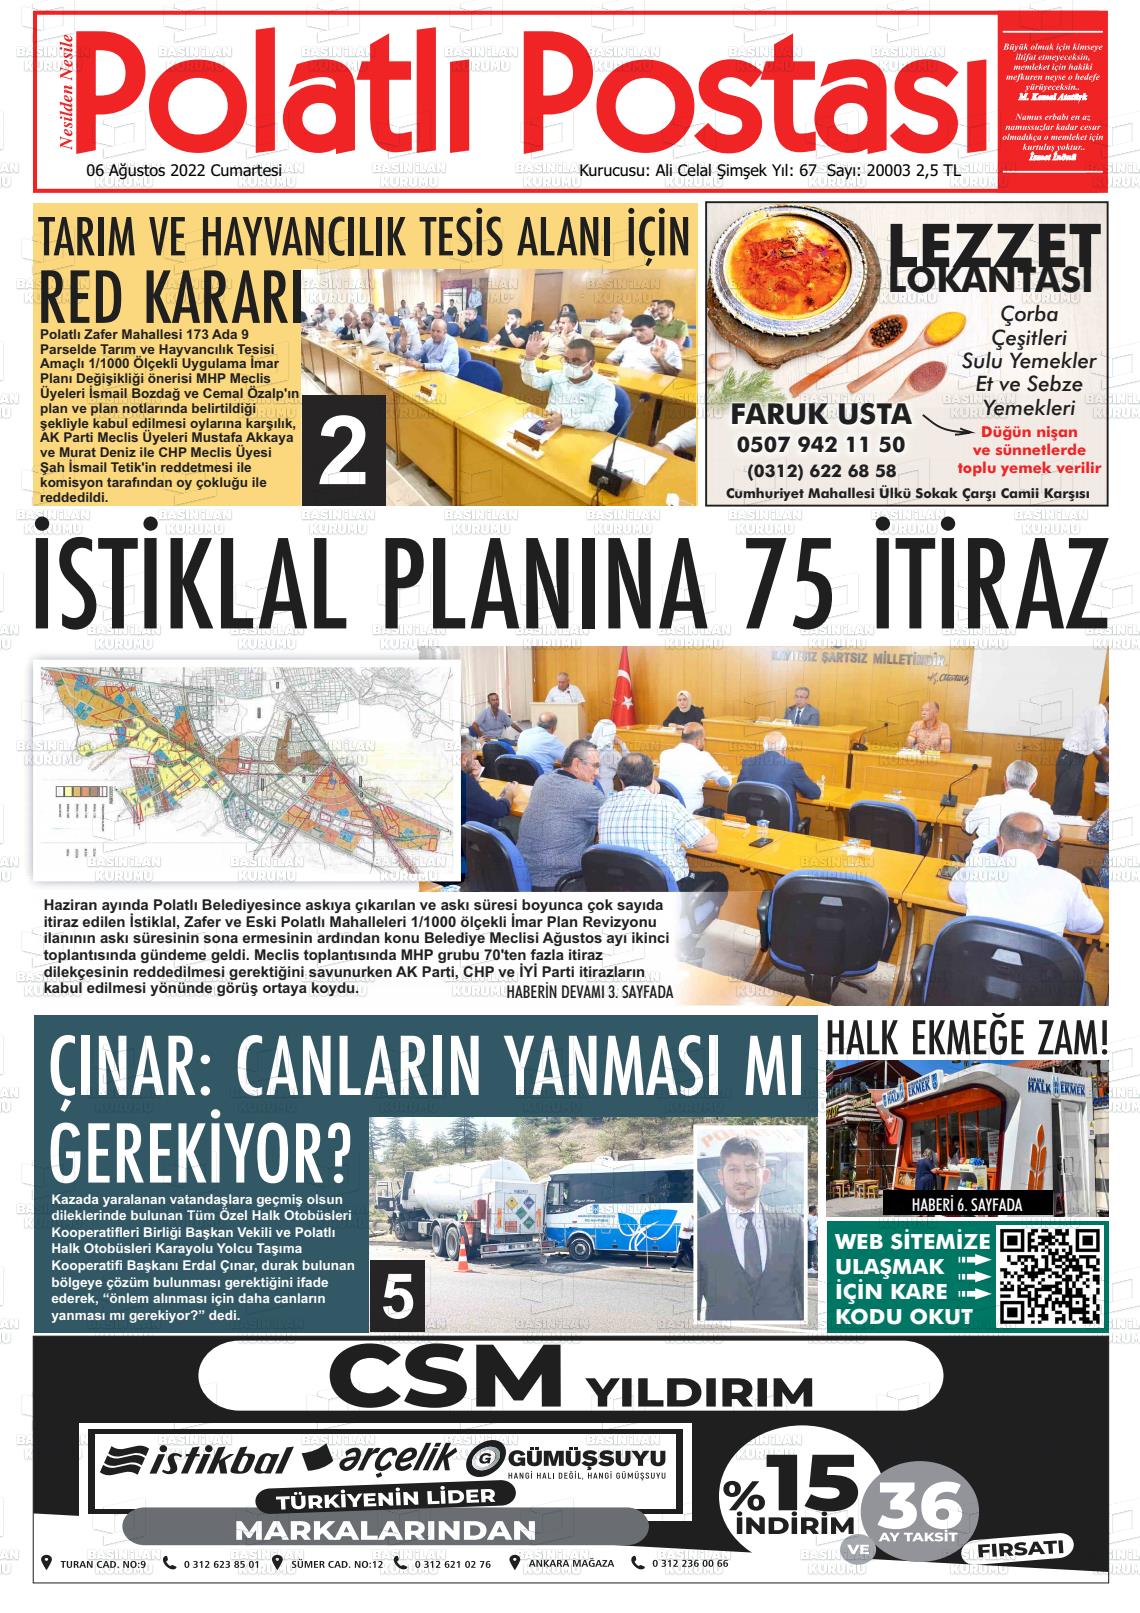 06 Ağustos 2022 Polatlı Postası Gazete Manşeti